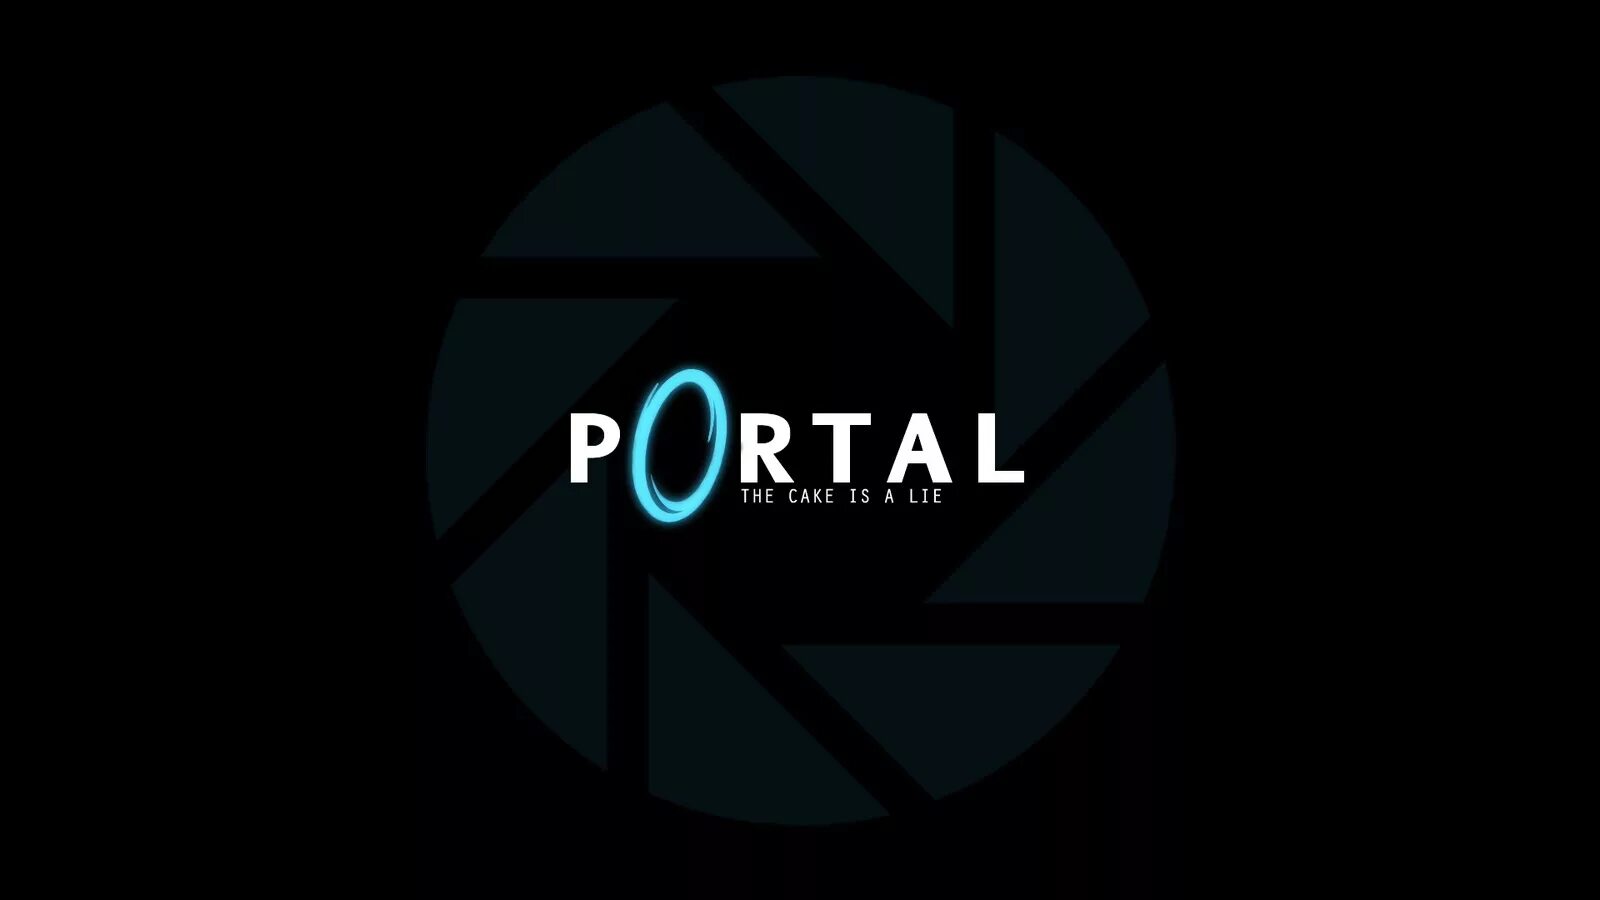 Читать портал 1. Обои портал. Portal обои. Portal обои на рабочий стол. Portal 1 обои.